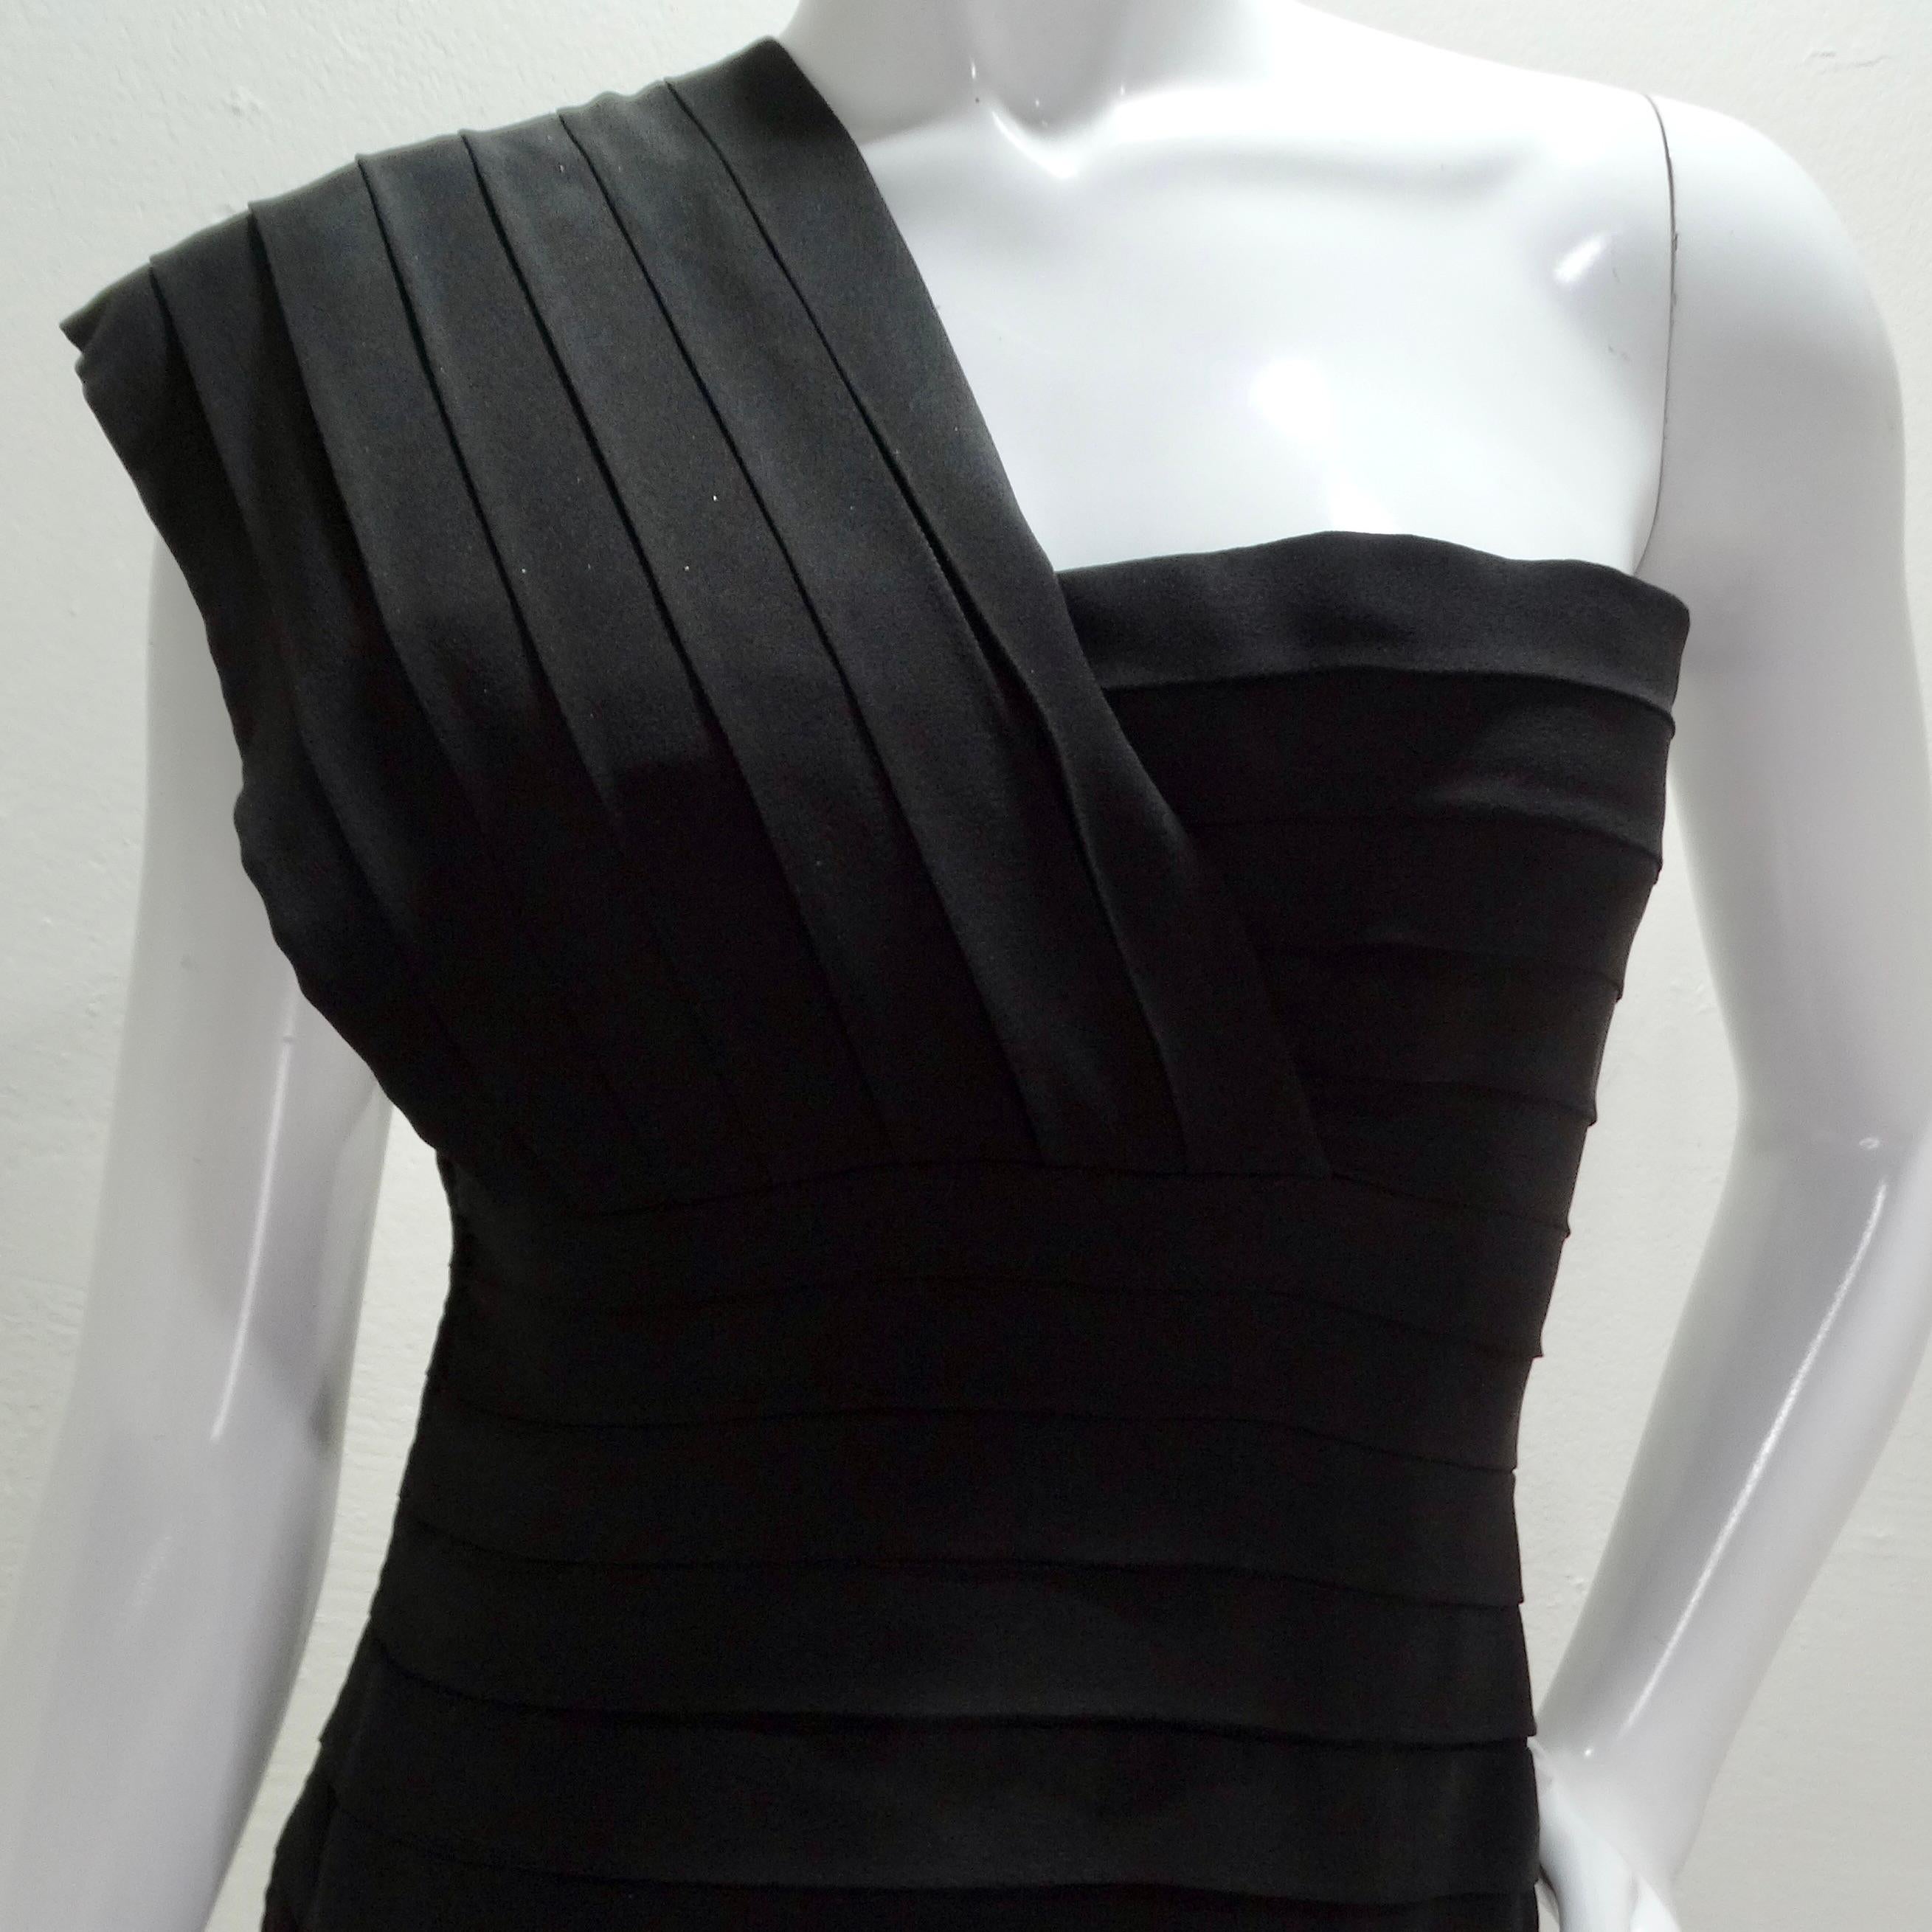 Lassen Sie sich vom Charme der 1980er Jahre verzaubern mit dem asymmetrischen, mit Sternen bestickten Kleid von Bernard Perris, das Vintage-Charme mit zeitloser Eleganz verbindet. Dieses schwarze, plissierte Minikleid wurde mit viel Liebe zum Detail